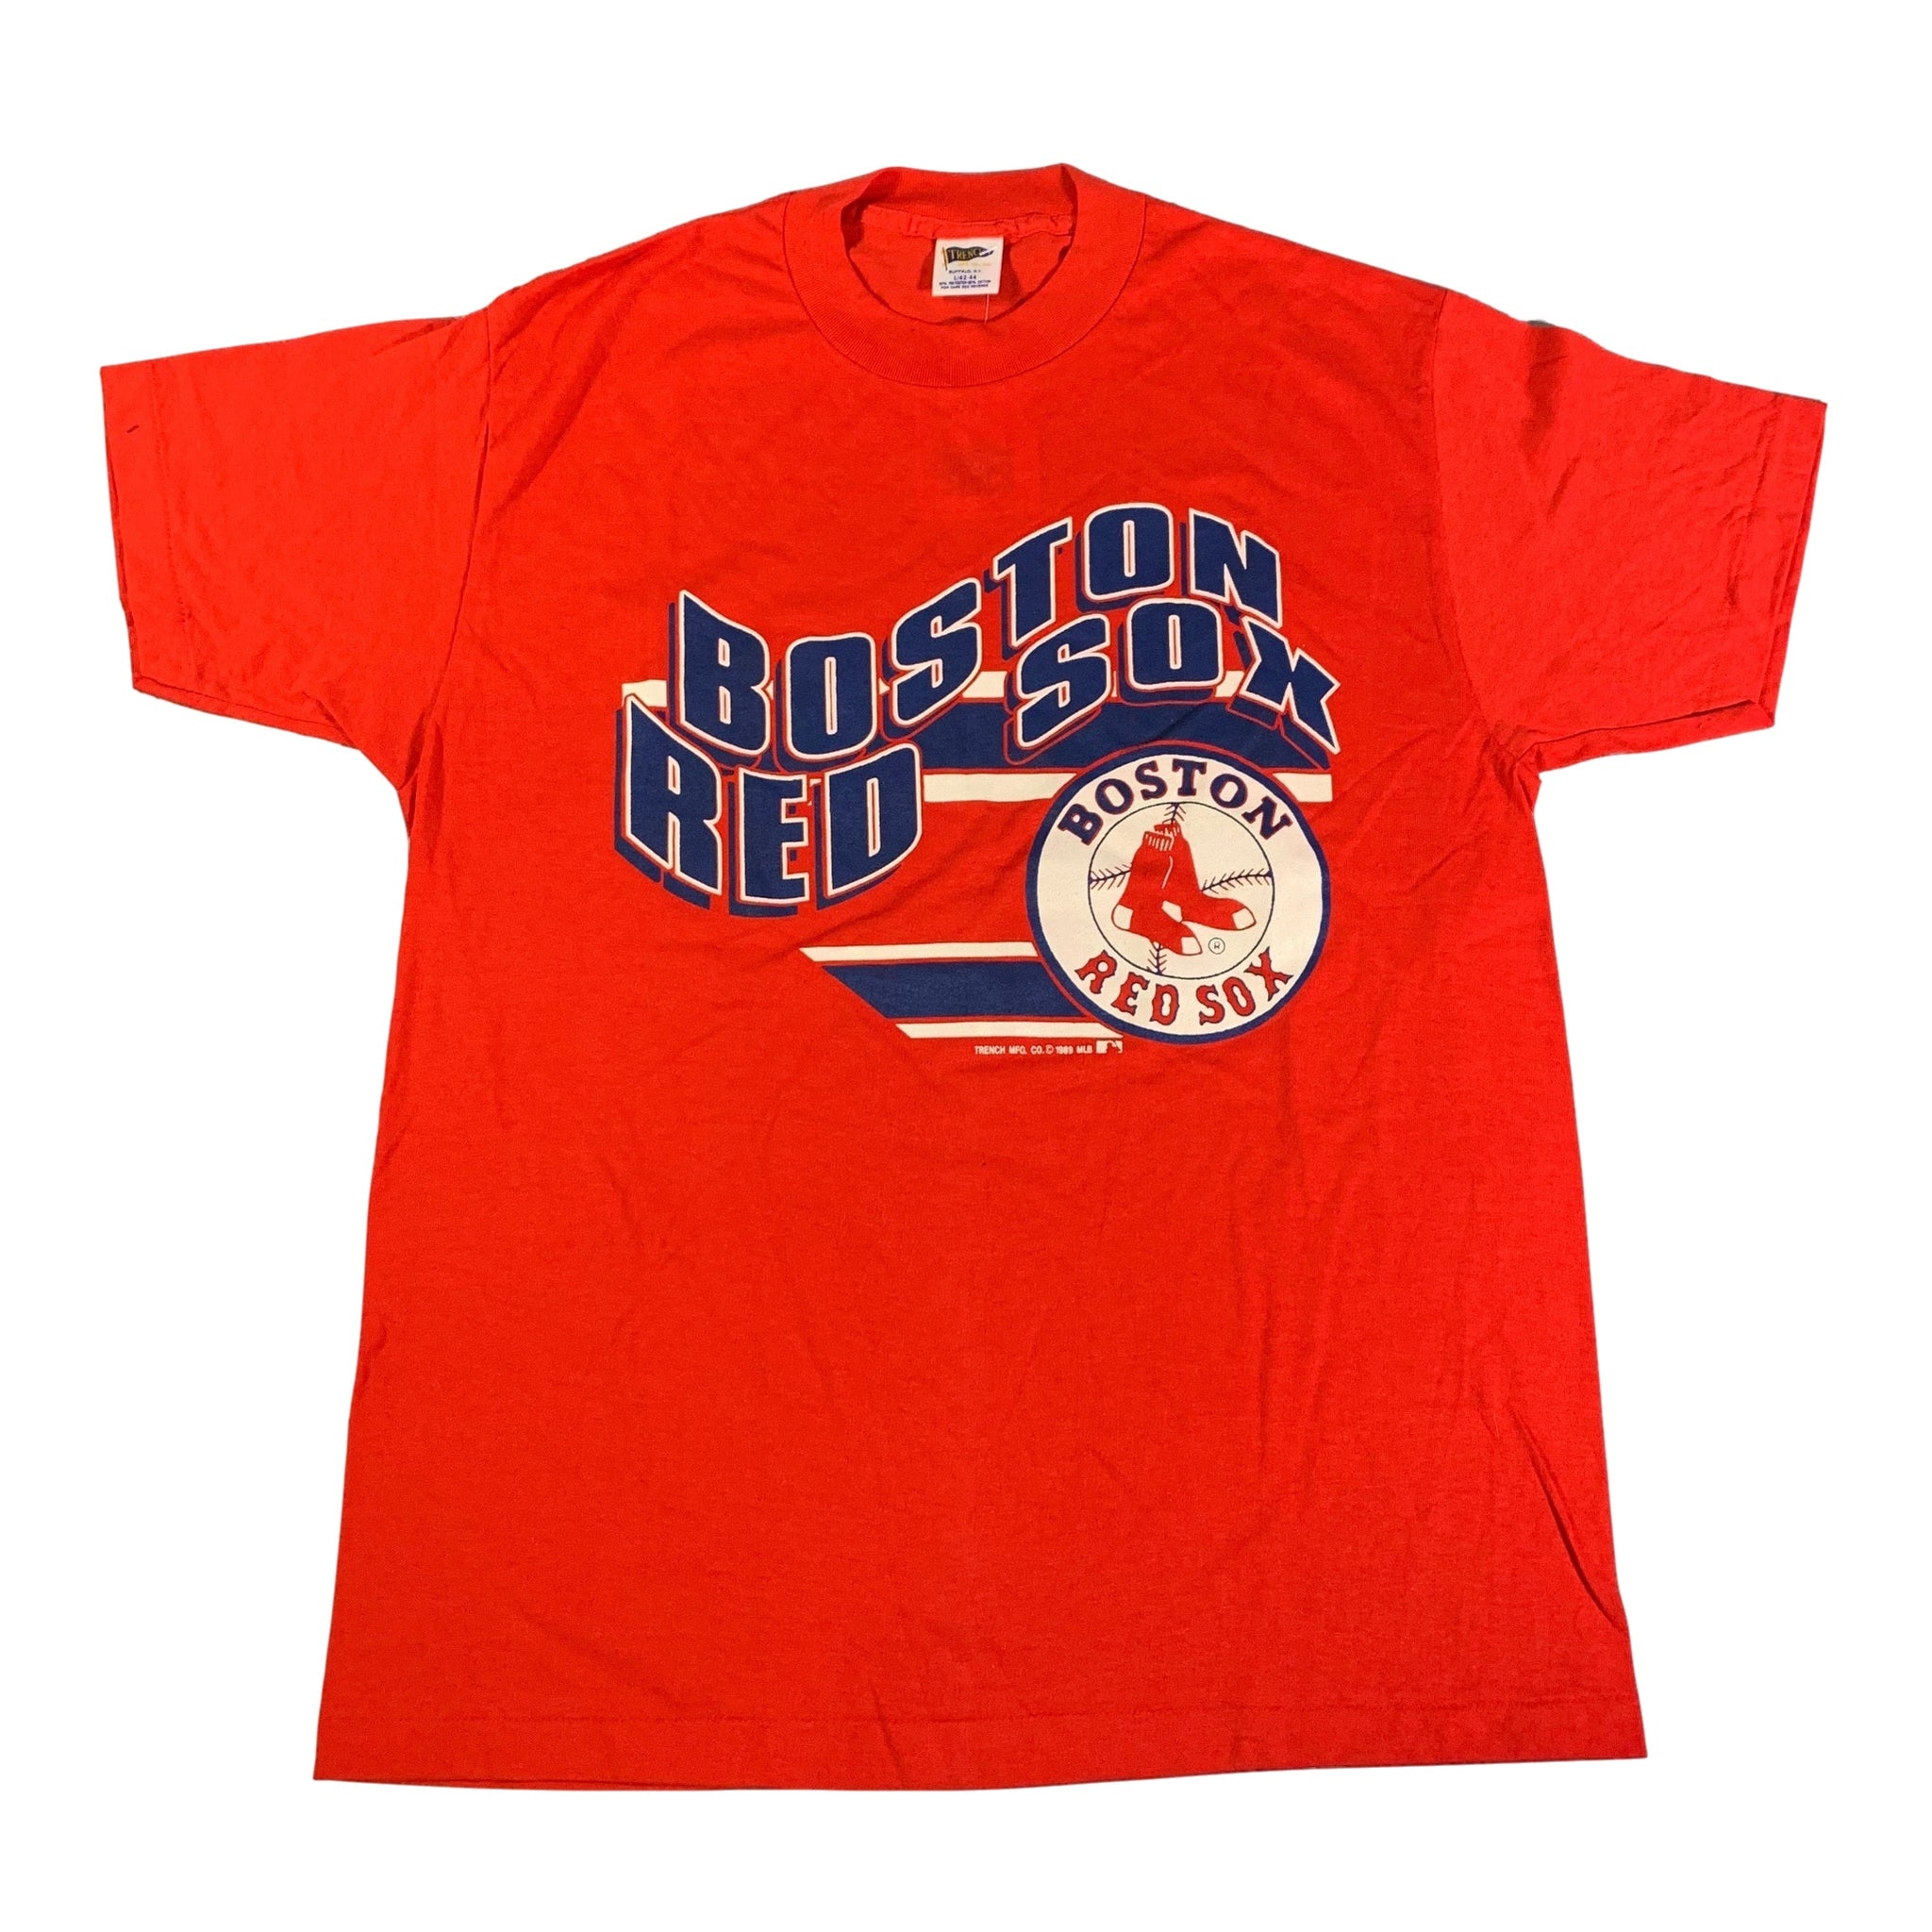 Boston Red Sox Red Sox Shirt Baseball Shirt Vintage Red